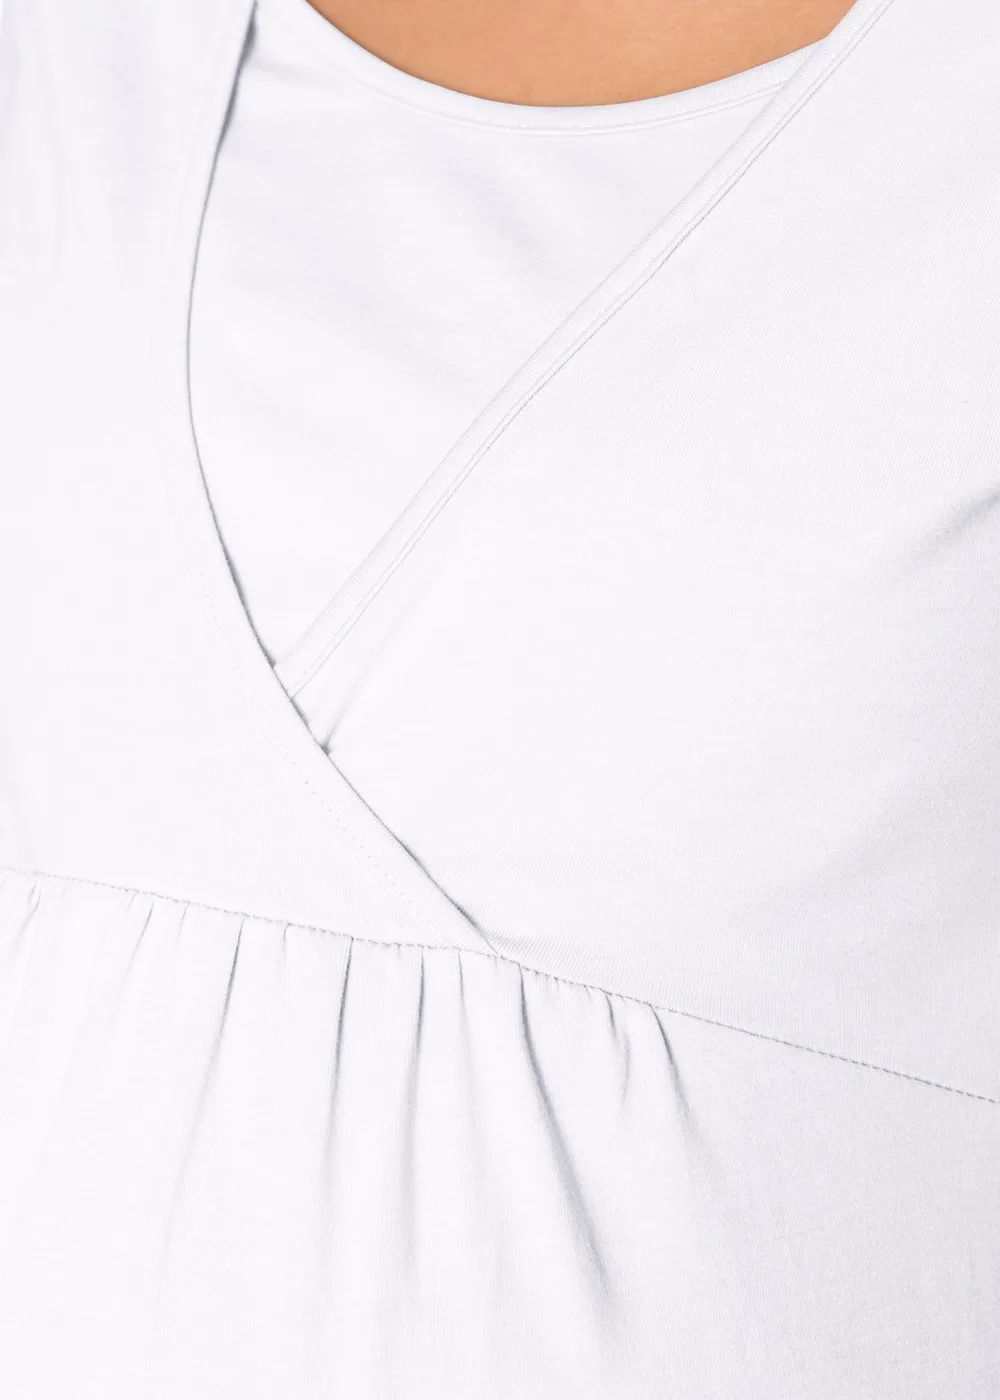 Грудное вскармливание кормящих футболка одежда Блузки для беременных женщин футболки для беременных женские Короткие повседневные футболки для беременных